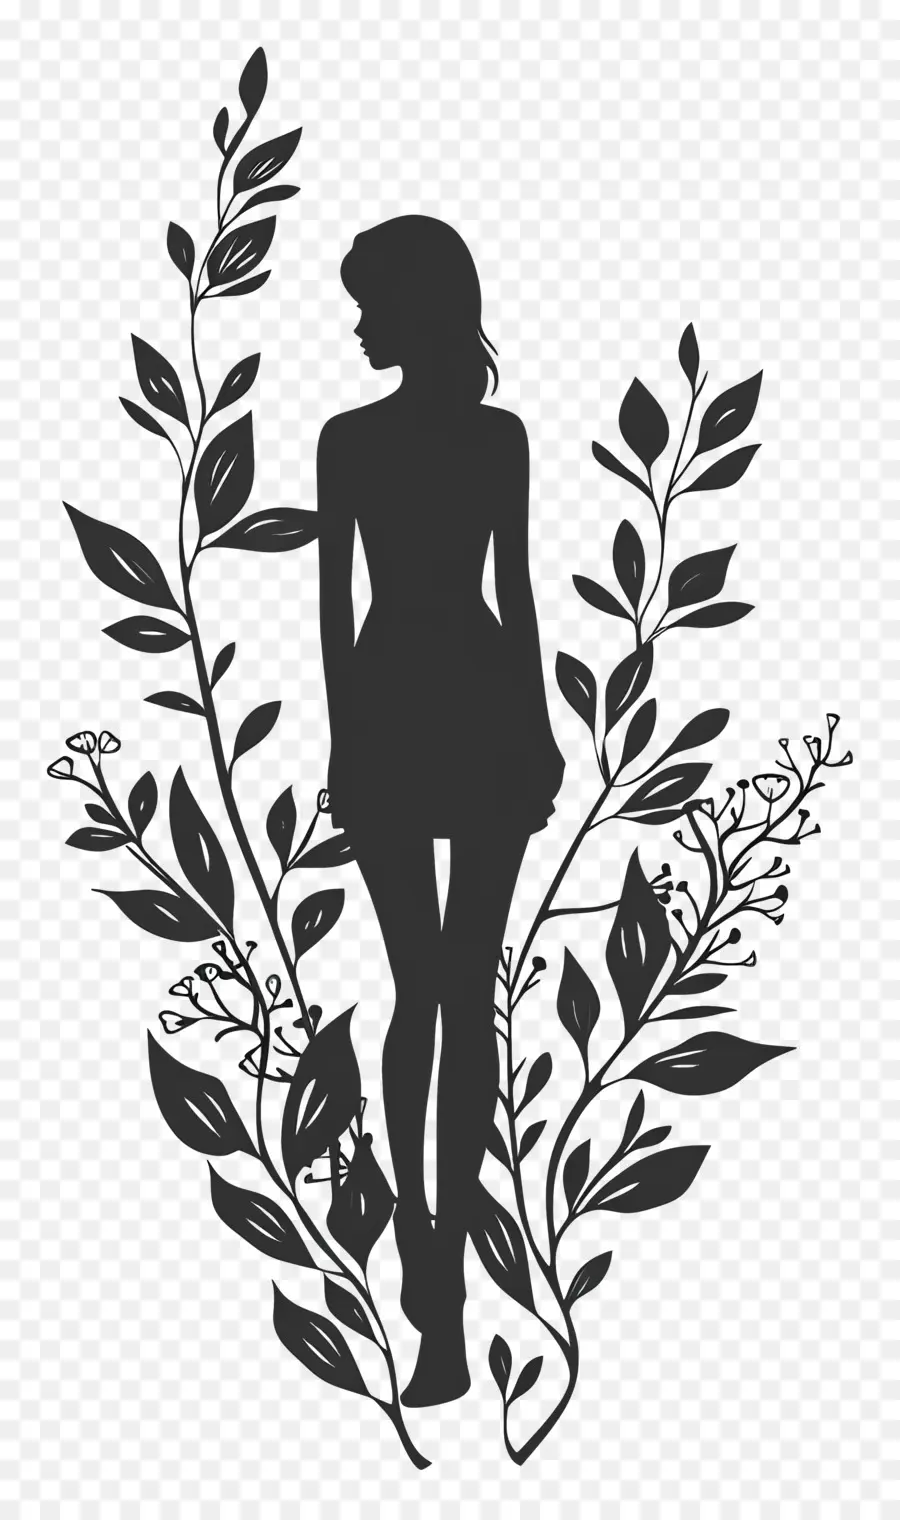 Cô gái hình bóng phụ nữ Silhouette Cây hoa đen và trắng - Hình bóng của người phụ nữ được bao quanh bởi thực vật